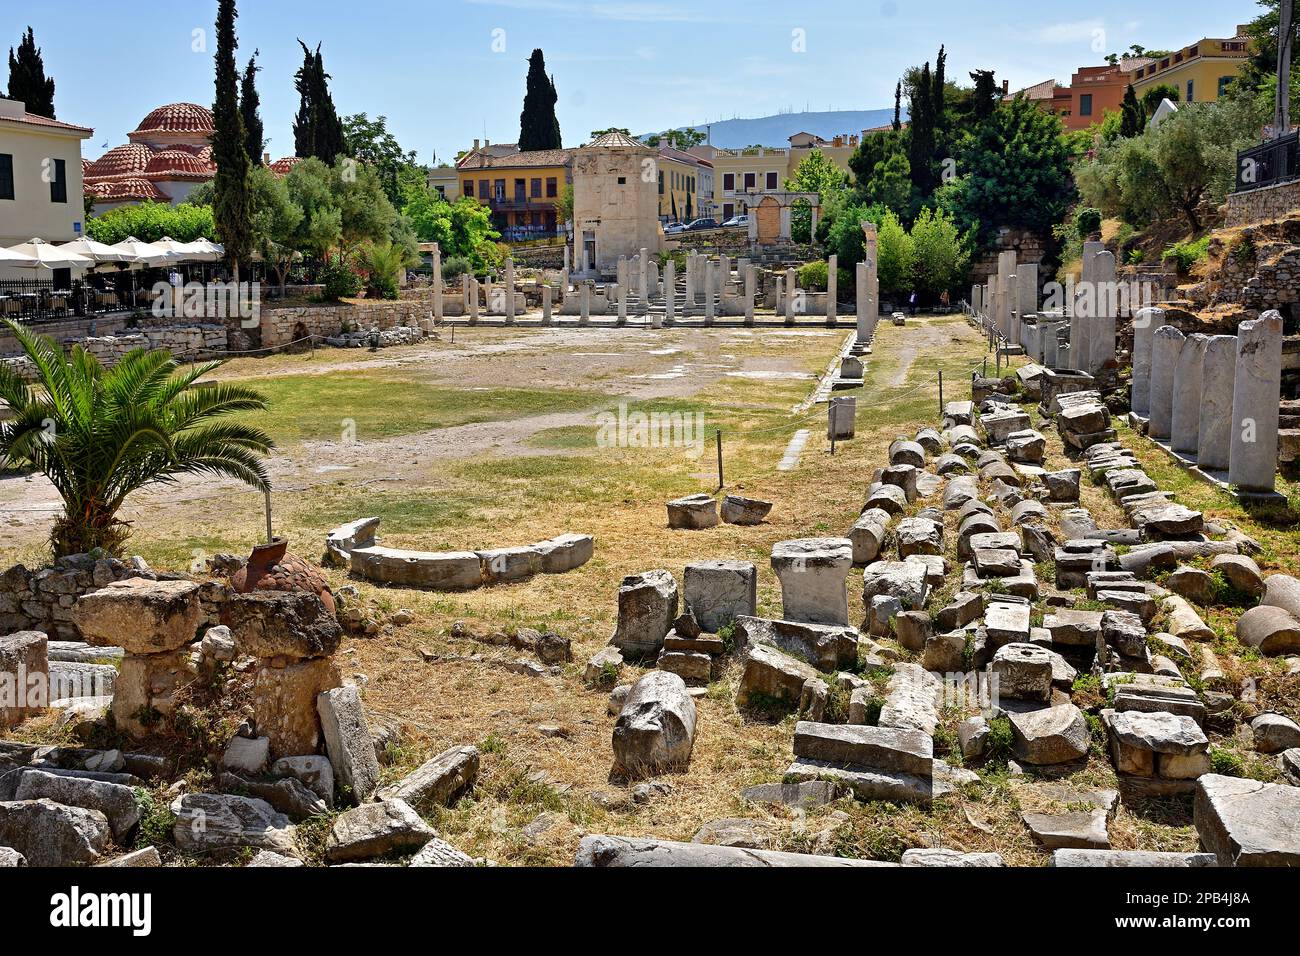 Weitere Informationen werden bearbeitet, tut mir leid, die antike Agora Athen Griechenland Griechisch. Stockfoto